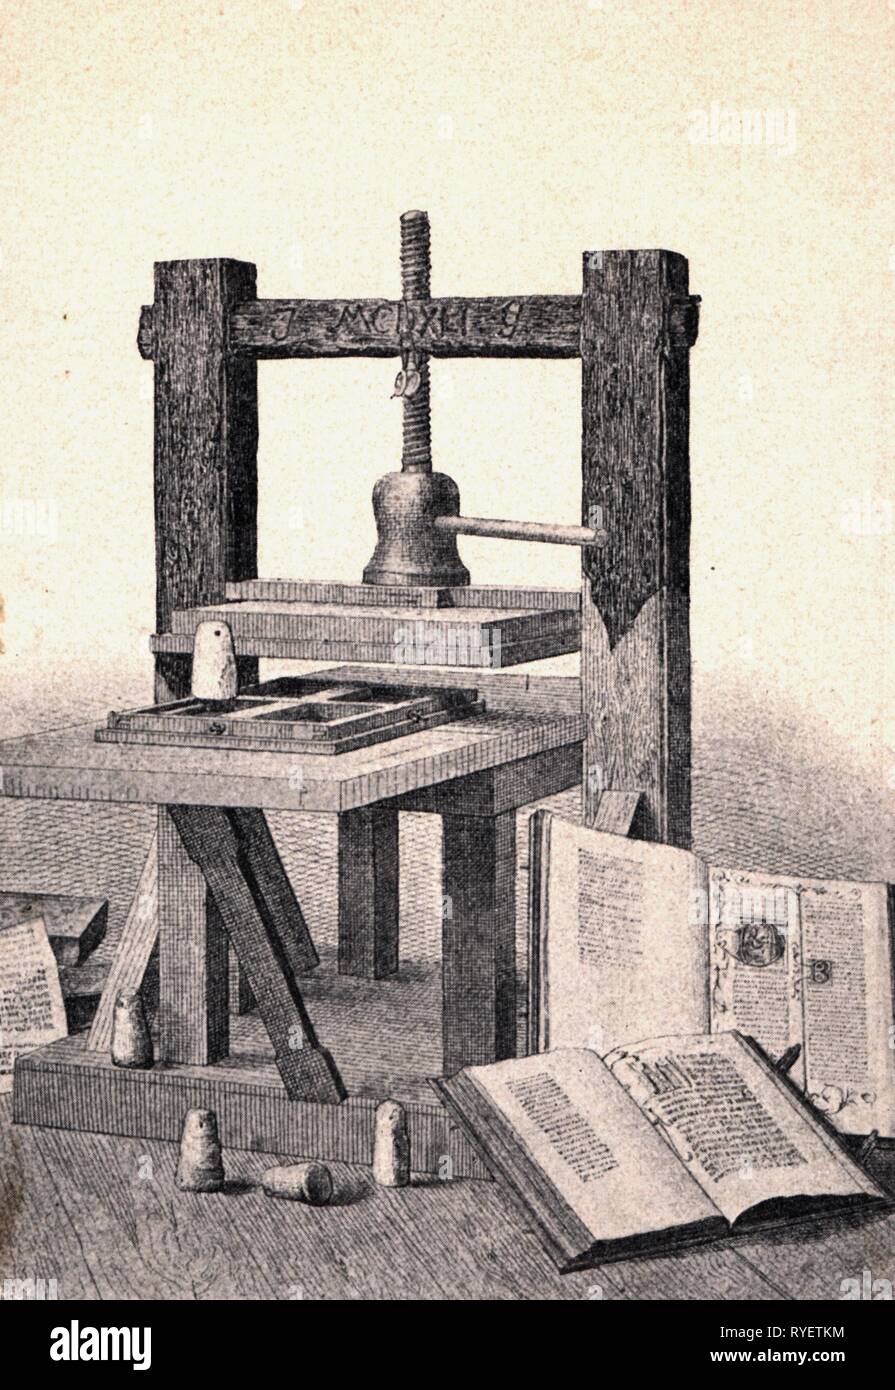 Technics, typographie, machines, imprimerie de Johannes Gensfleisch Gutenberg appelé, vers 1440, gravure sur bois, 2e moitié 19e siècle, Additional-Rights Clearance-Info-Not-Available- Banque D'Images